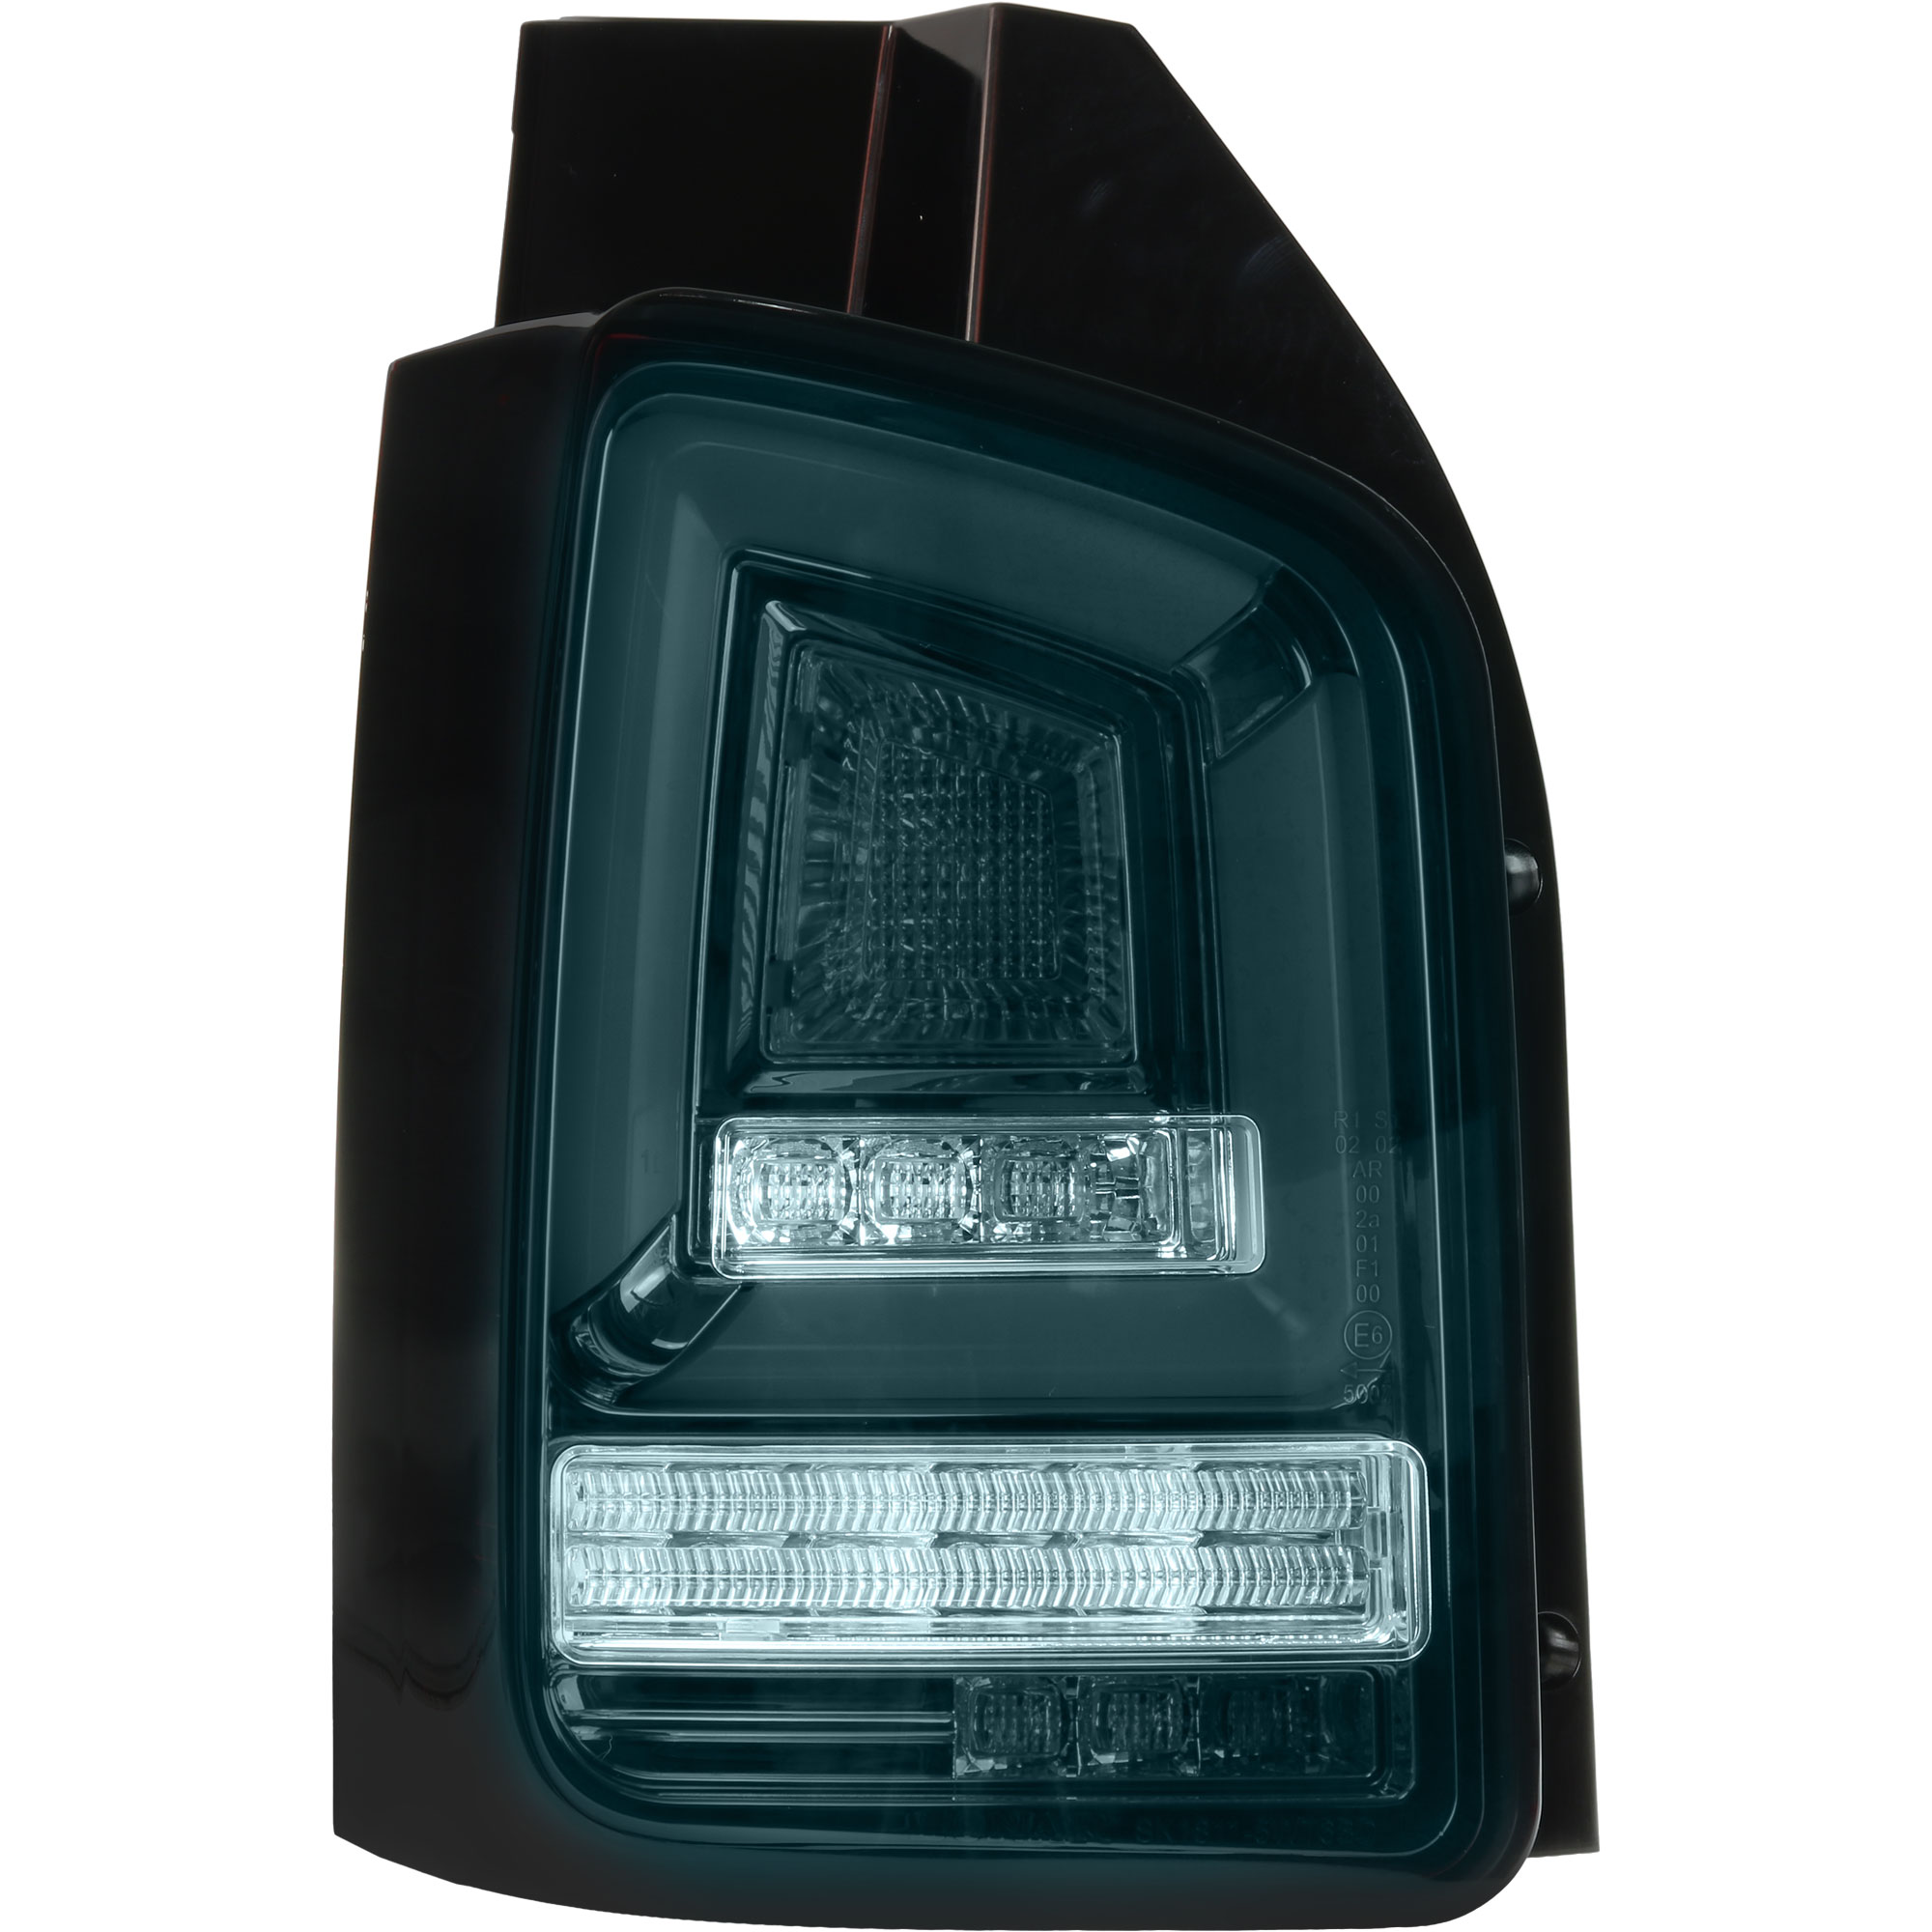 Rückleuchten Set LED Lightbar für VW T5 Bj. 09-15 rot schwarz für